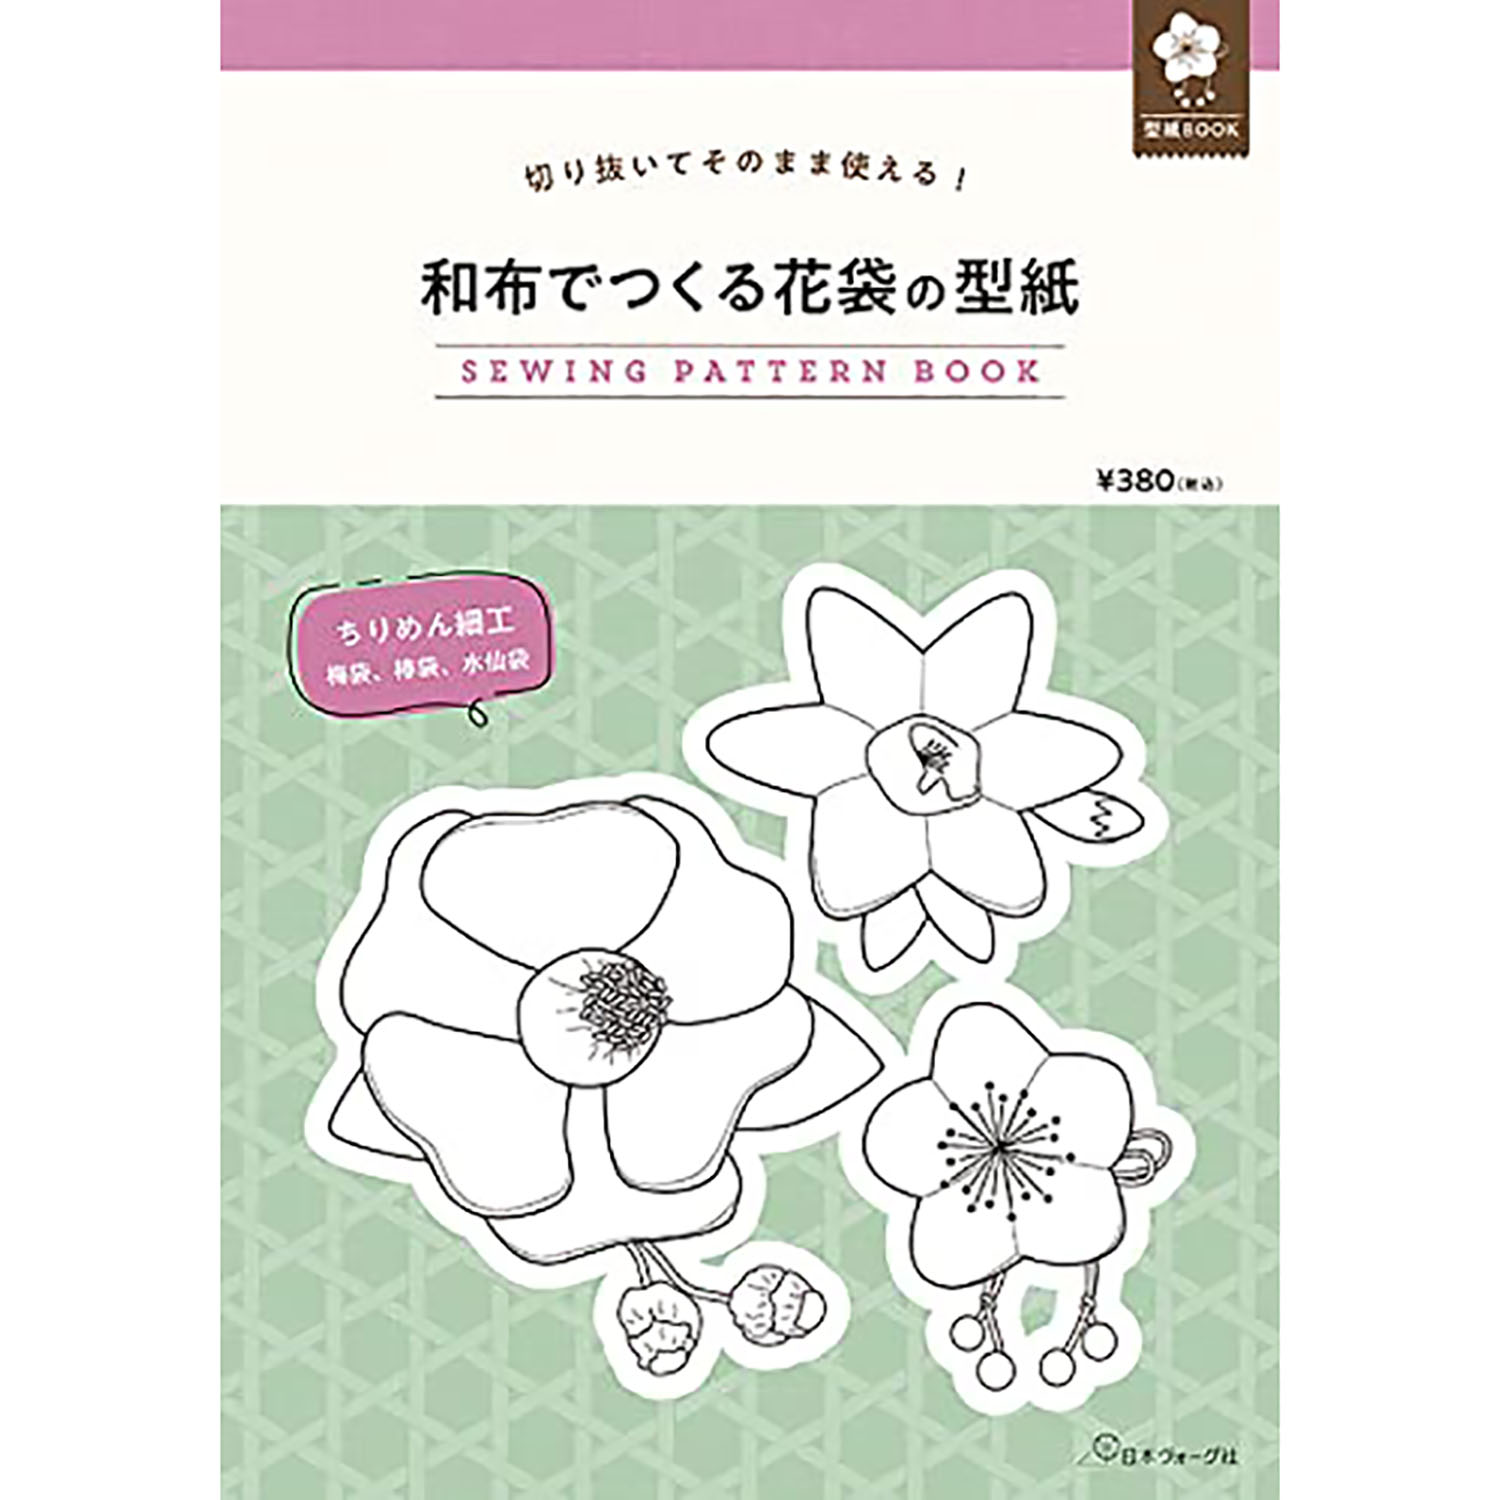 【お取り寄せ・返品不可】NV22053 和布でつくる花袋の型紙 SEWING PATTERN BOOK /日本ヴォーグ社 (冊)